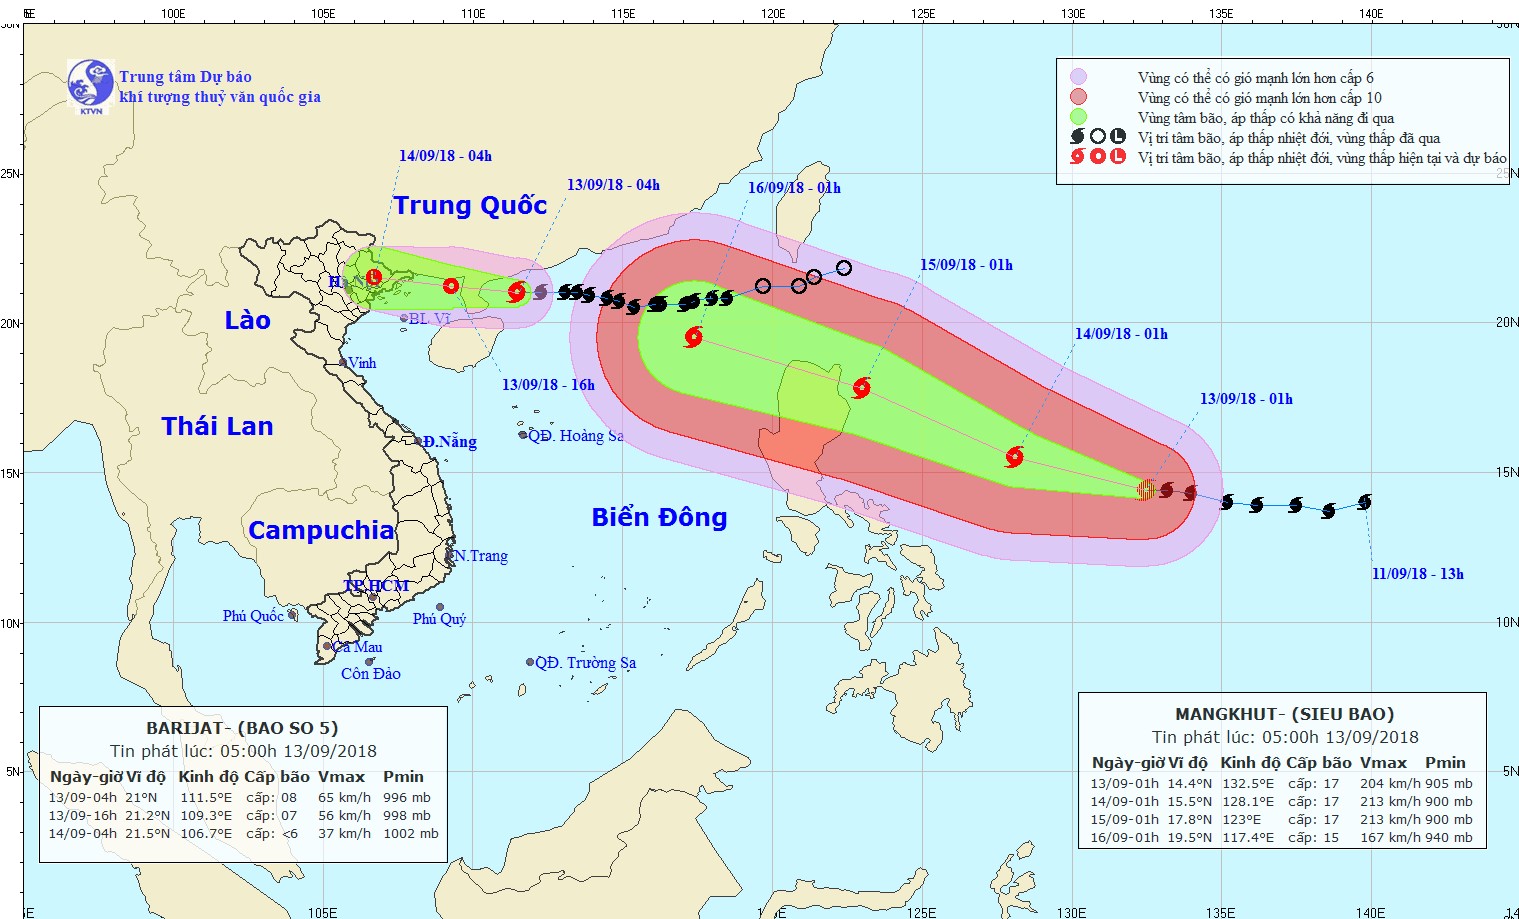 Bão số 5 và siêu bão Mangkhut đang hướng về phía đất liền.